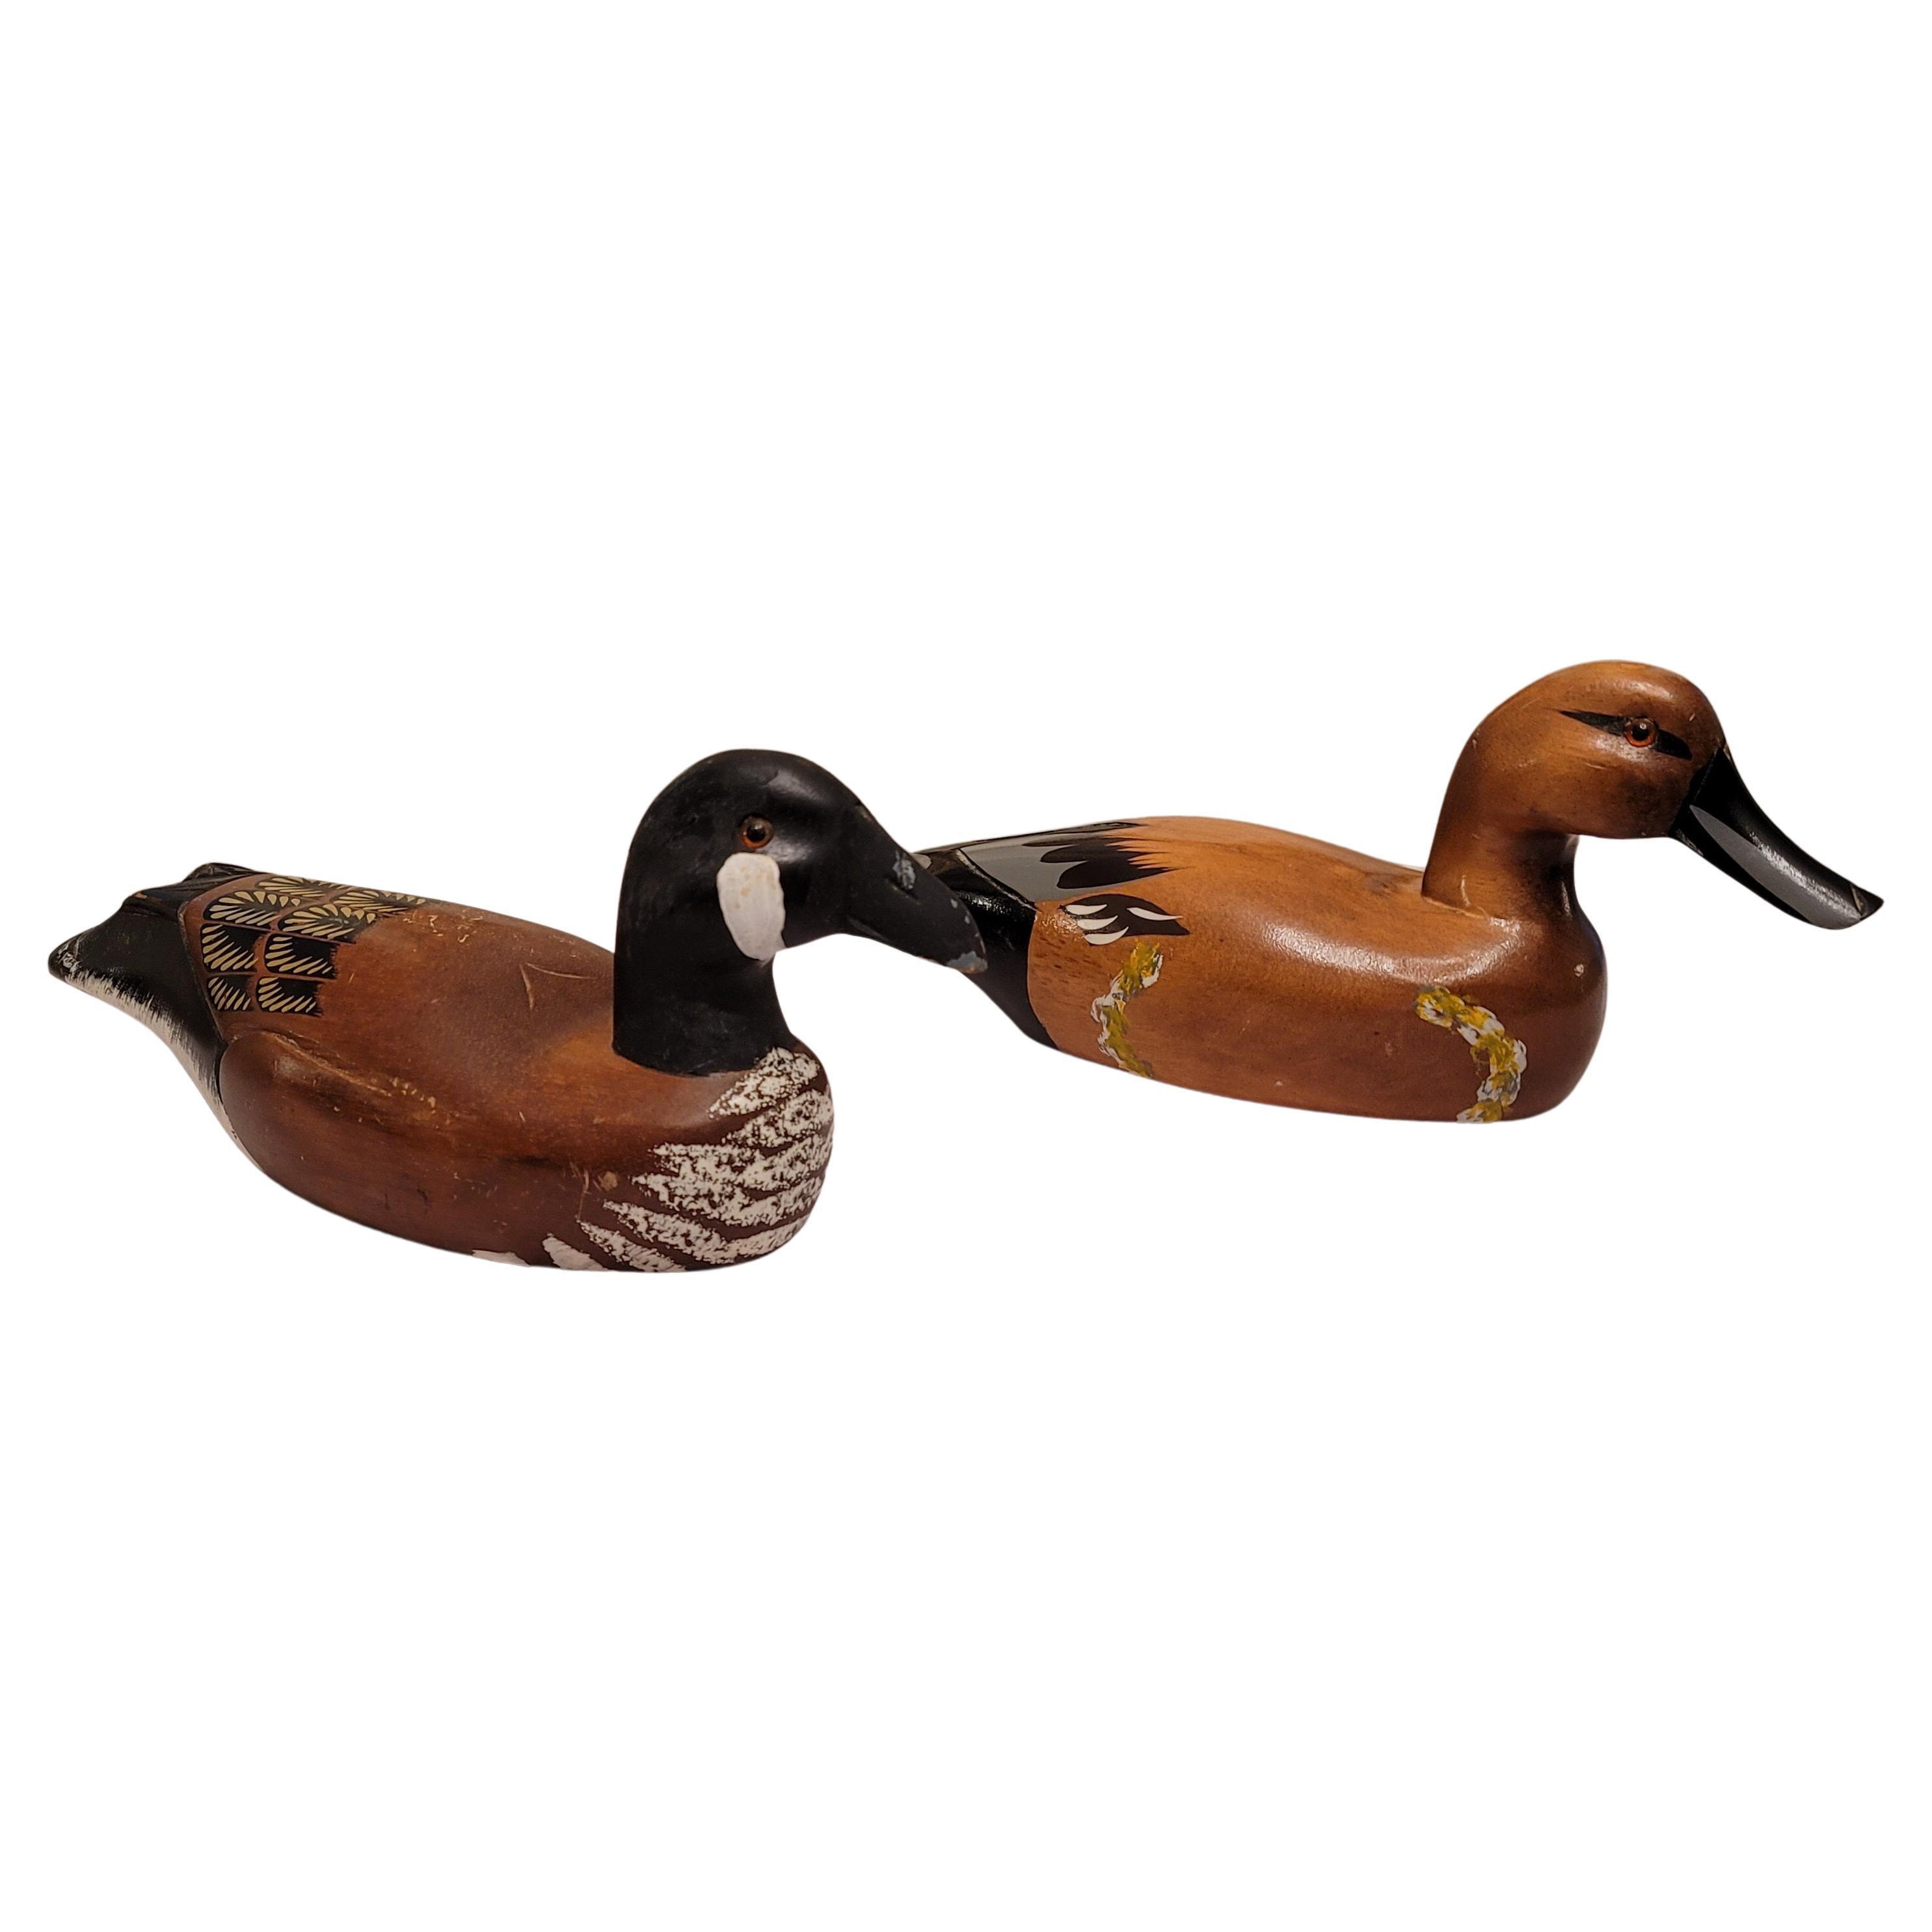 Paar amerikanische handgefertigte und bemalte Deko-Duck-Decoys im Vintage-Stil